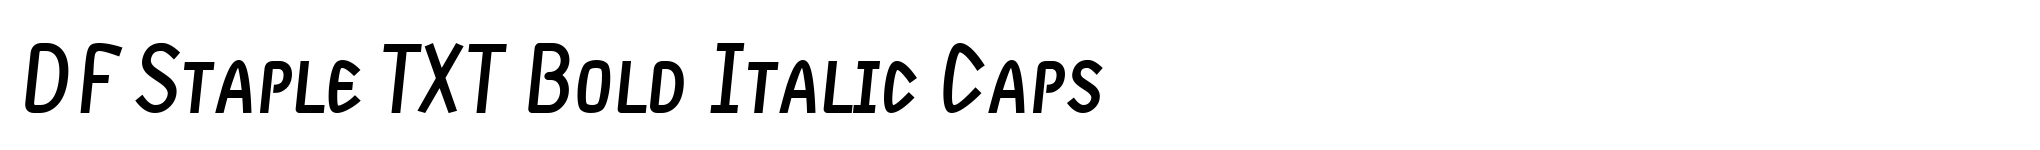 DF Staple TXT Bold Italic Caps image